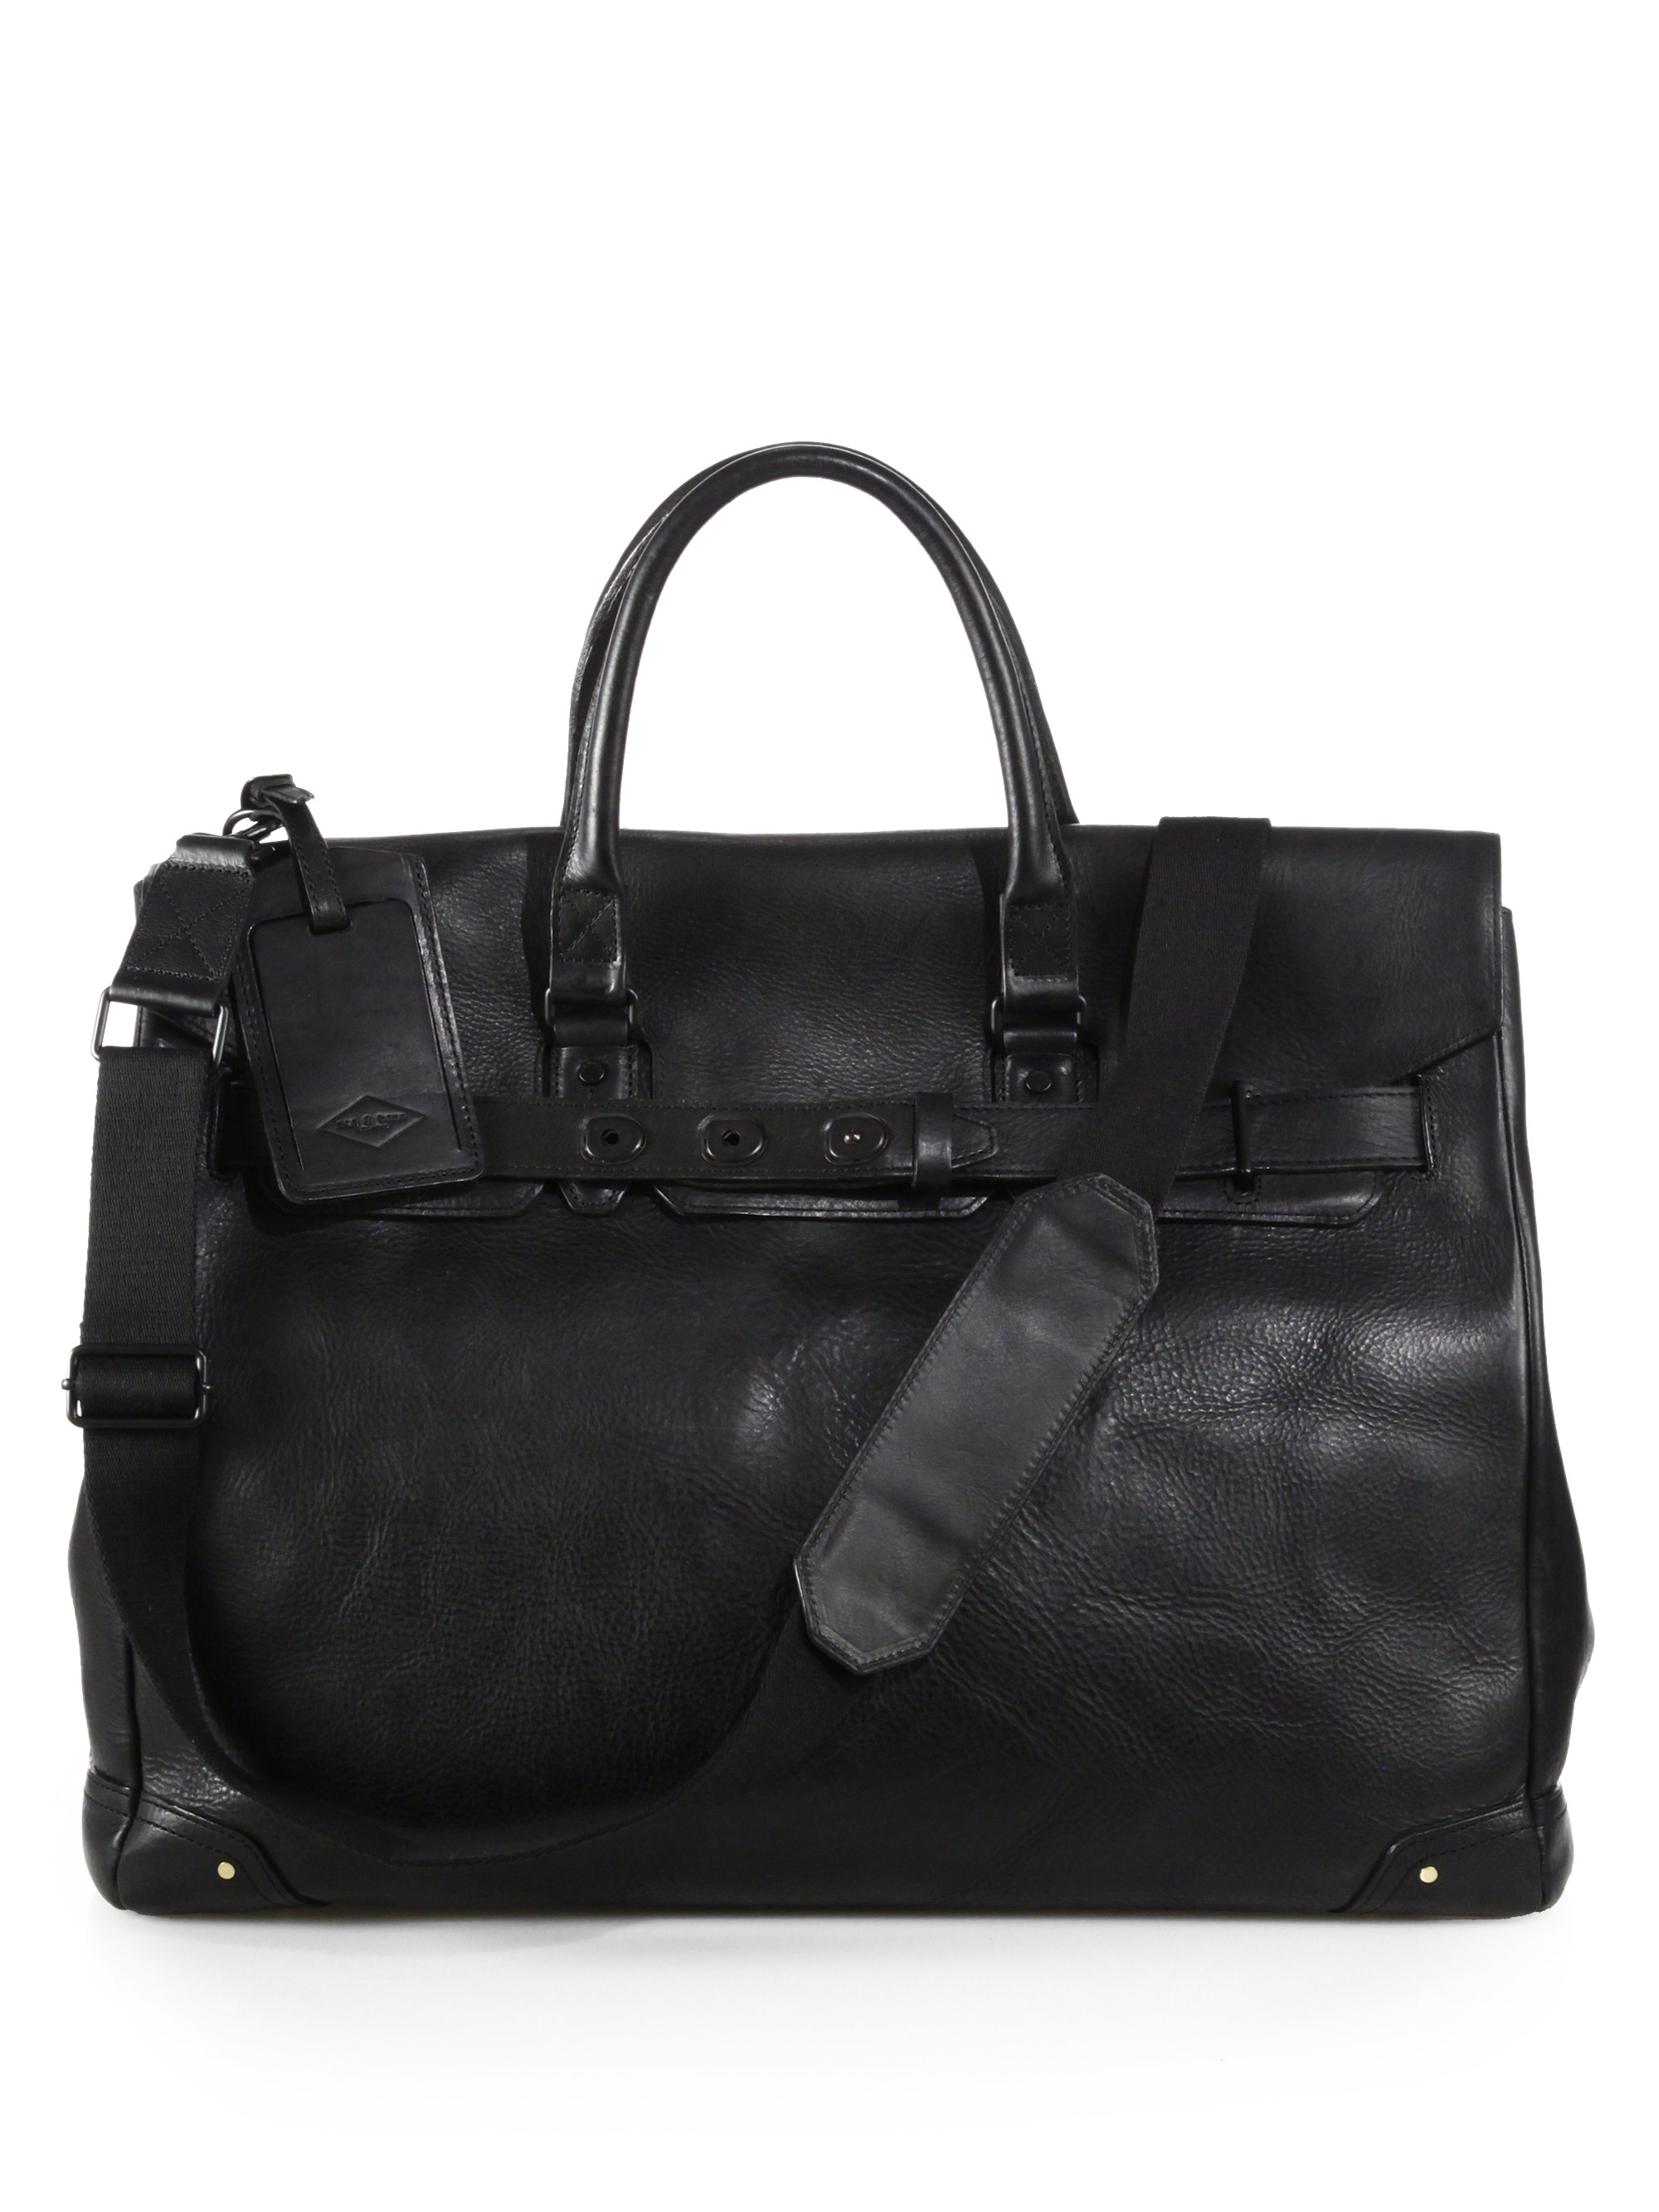 Lyst - Rag & bone Leather Dylan Bag in Black for Men